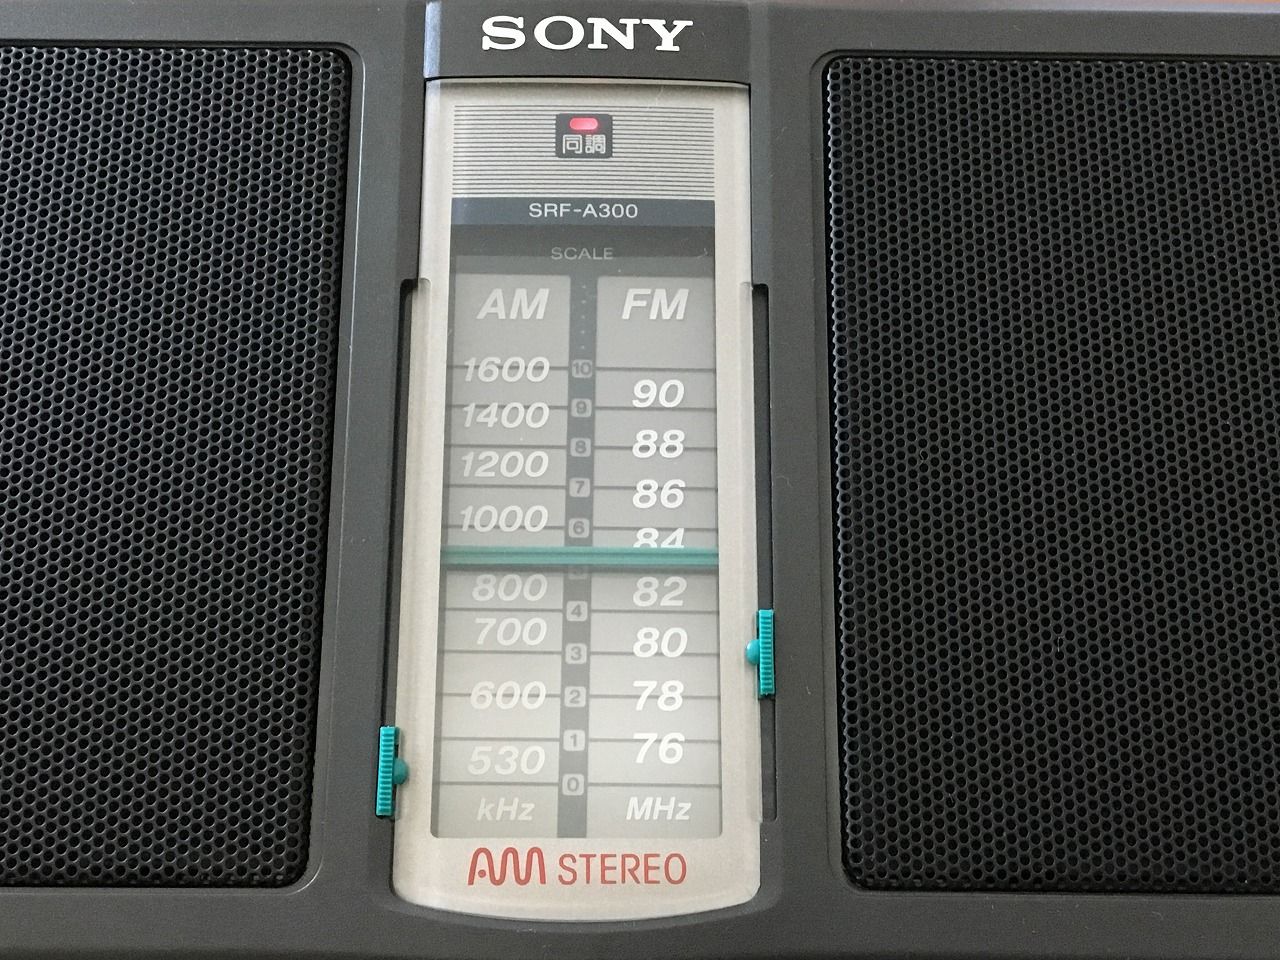 SONY SRF-A300（FMステレオ／AMステレオ ポータブルラジオ 